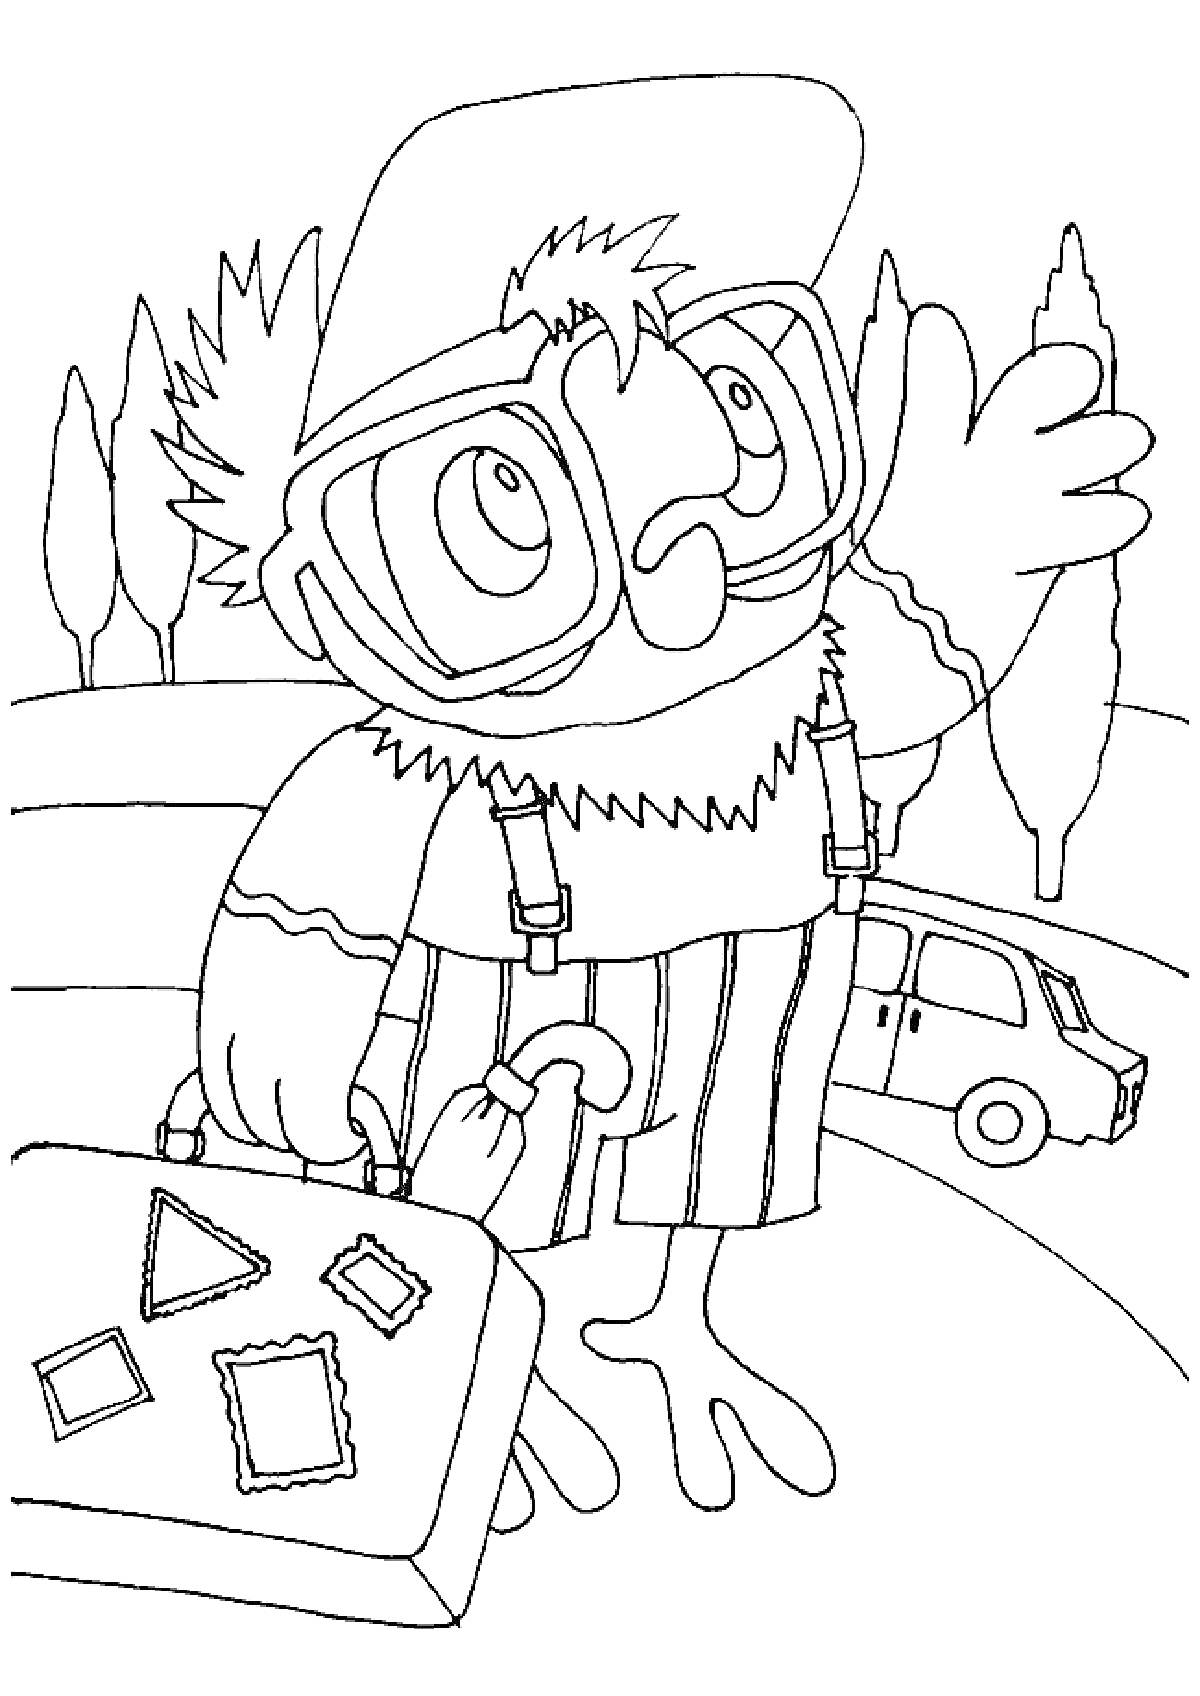 Раскраска Попугай Кеша с чемоданом на улице рядом с деревьями и машиной